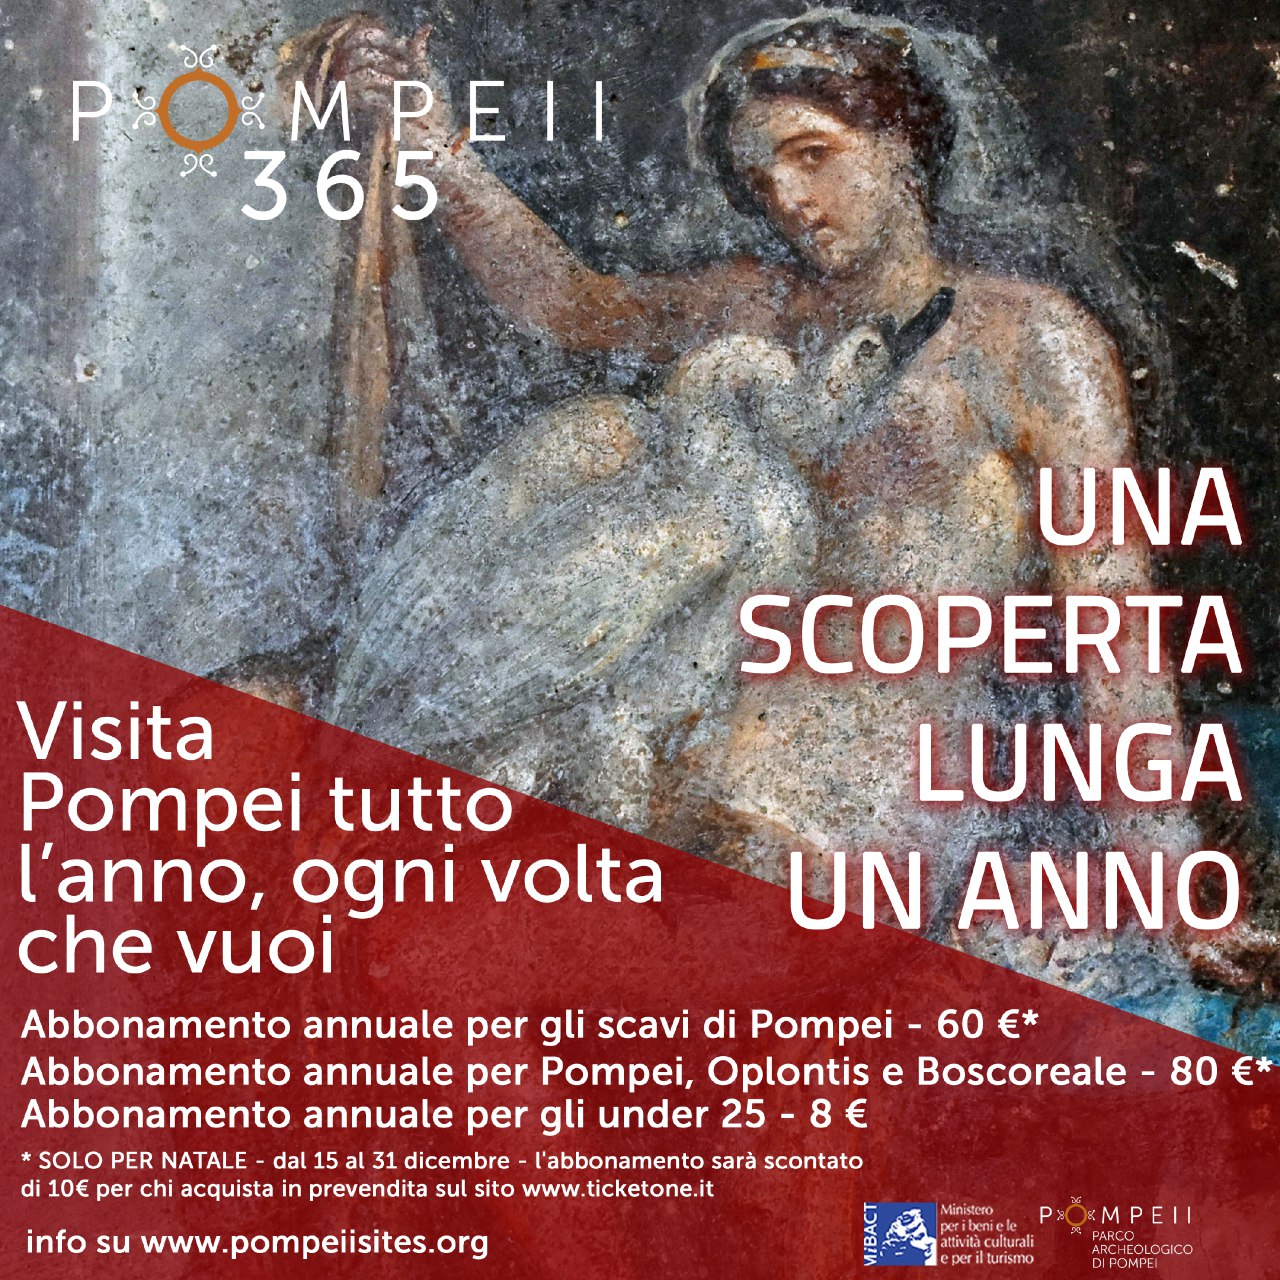 POMPEI 365, l’abbonamento per visitare Pompei ‘ogni volta che vuoi’ – dal 1 gennaio 2020